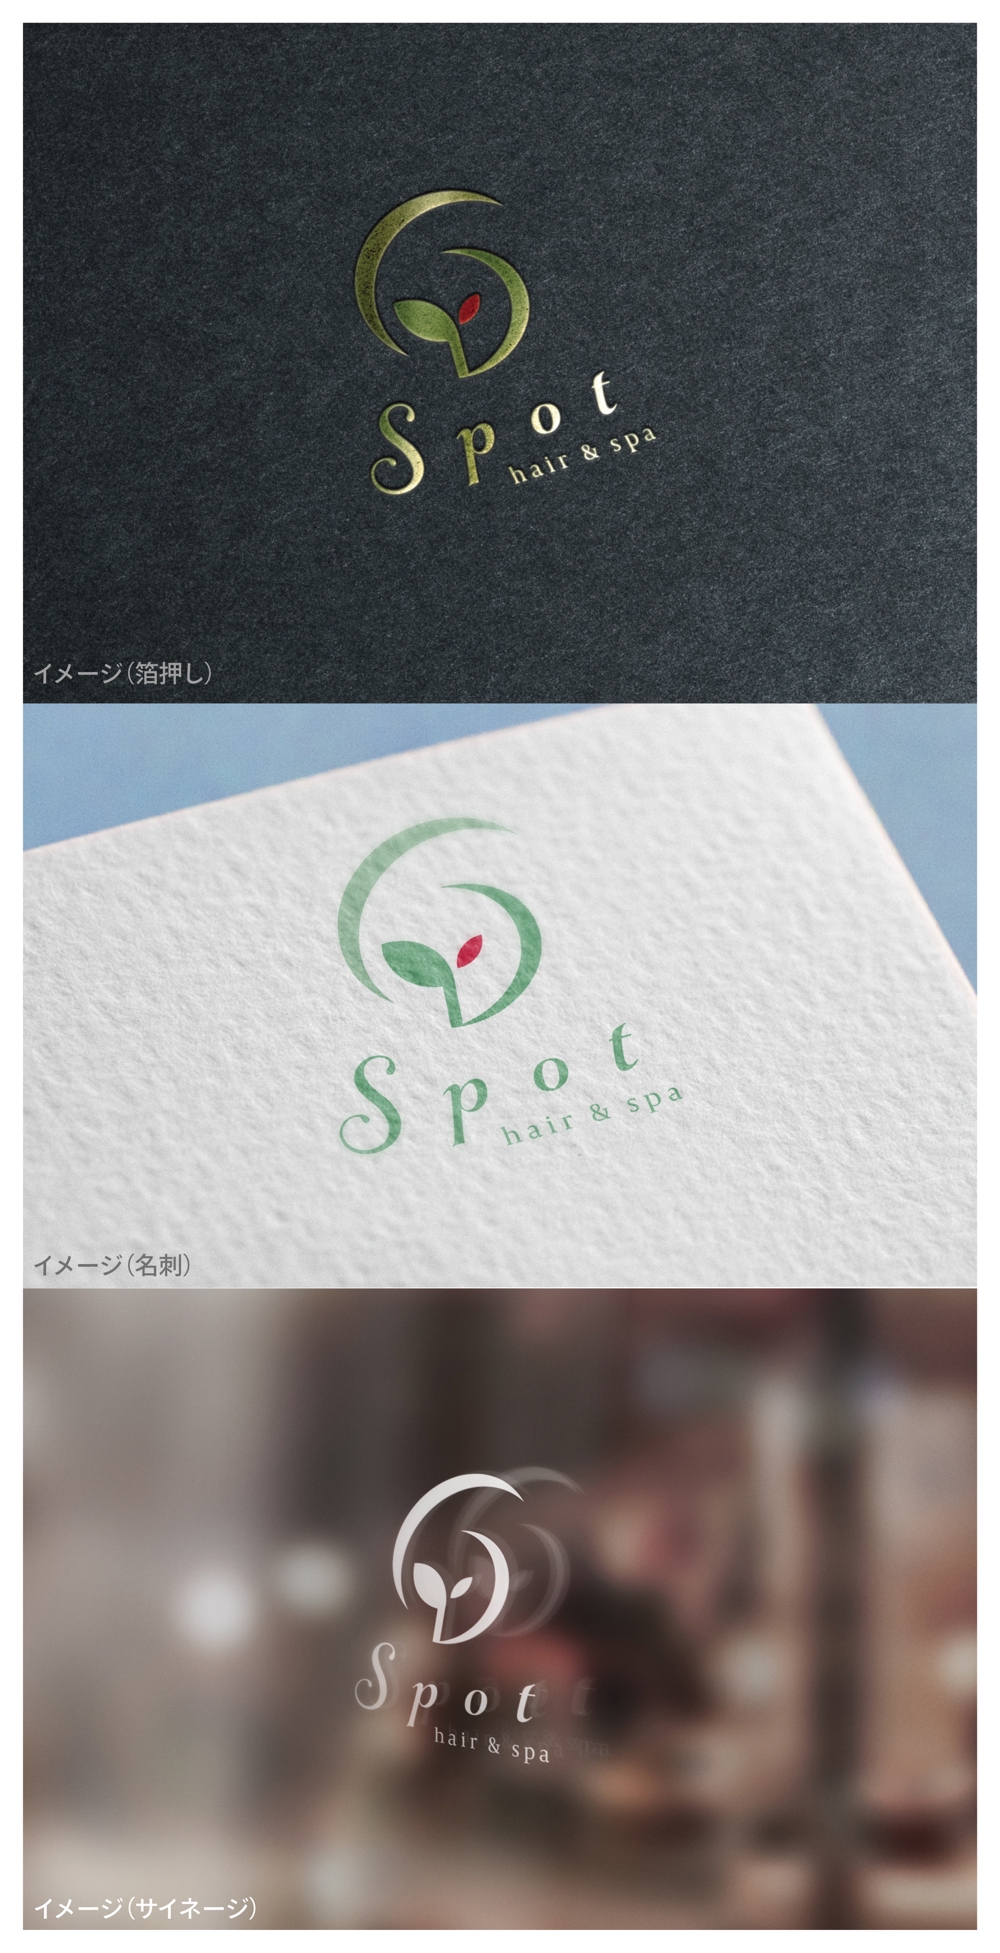 hair & spa Spot_logo01_01.jpg